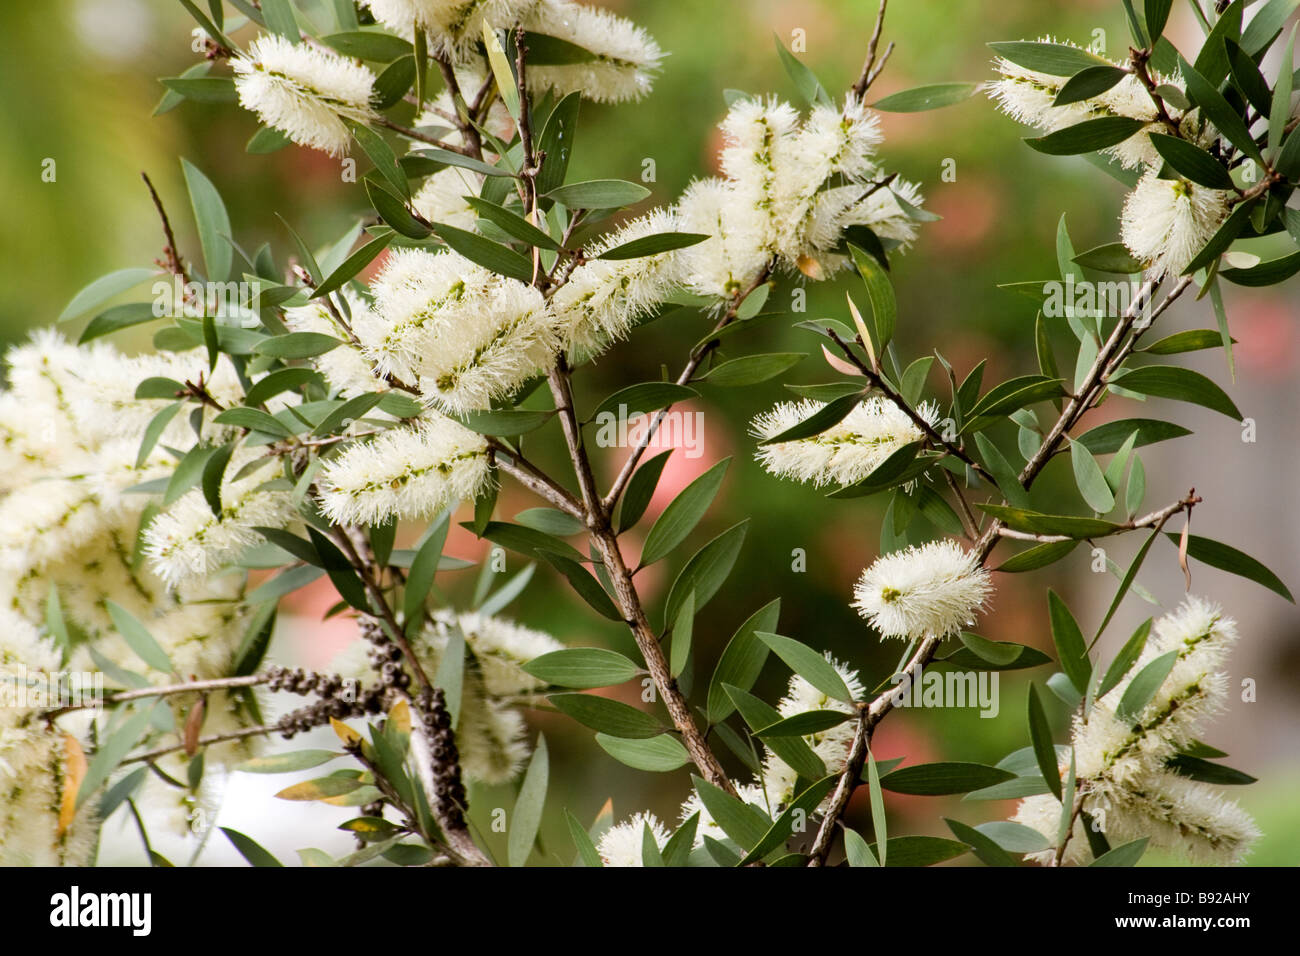 Melaleuca in flower Stock Photo